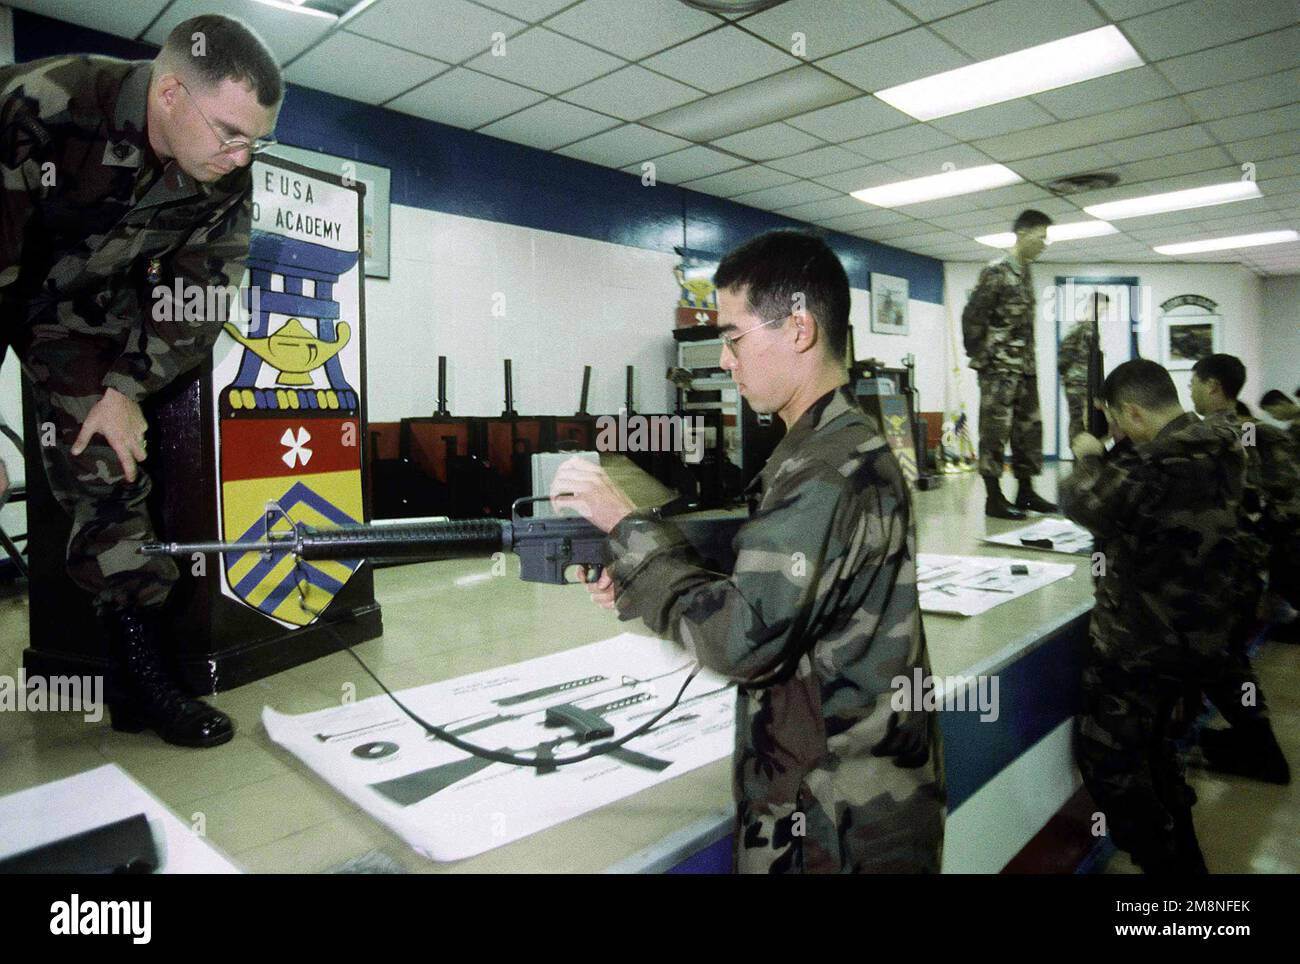 SSGT Steven Humes, Platoon-Dozent am koreanischen Trainingscenter der US Army (KATUSA), Camp Jackson, Republik Korea, evaluiert einen Trainee für die Ausräumung eines M-16 am 30. Oktober 1998. Das ursprünglich 1950 aufgelegte KATUSA-Programm wurde entwickelt, um die US-Streitkräfte unmittelbar nach dem Ausbruch des Koreakrieges zu verstärken. Nach dem Waffenstillstand blieben KATUSA-Soldaten bei 8. Armeeeinheiten, um die Einsatzfähigkeit zu verbessern. Koreanische Enlistees nehmen an einem 20-tägigen Trainingsprogramm im Zentrum Teil, wo sie ihre Englischkenntnisse verbessern und mehr über die amerikanische Kultur und die Struktur der US-Armee erfahren Stockfoto